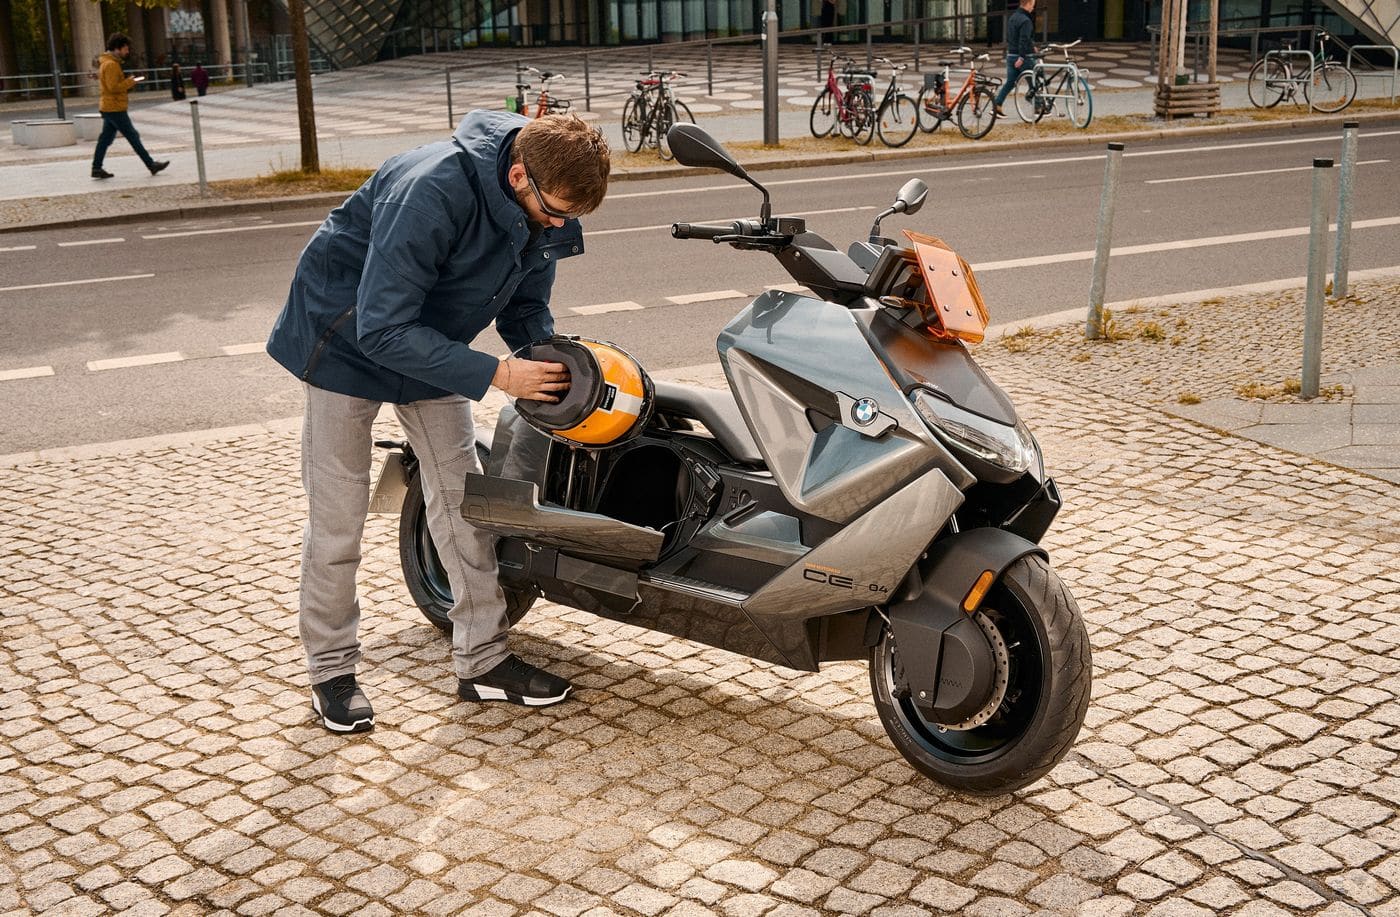 BMW CE 04: новый электрический макси-скутер в деталях